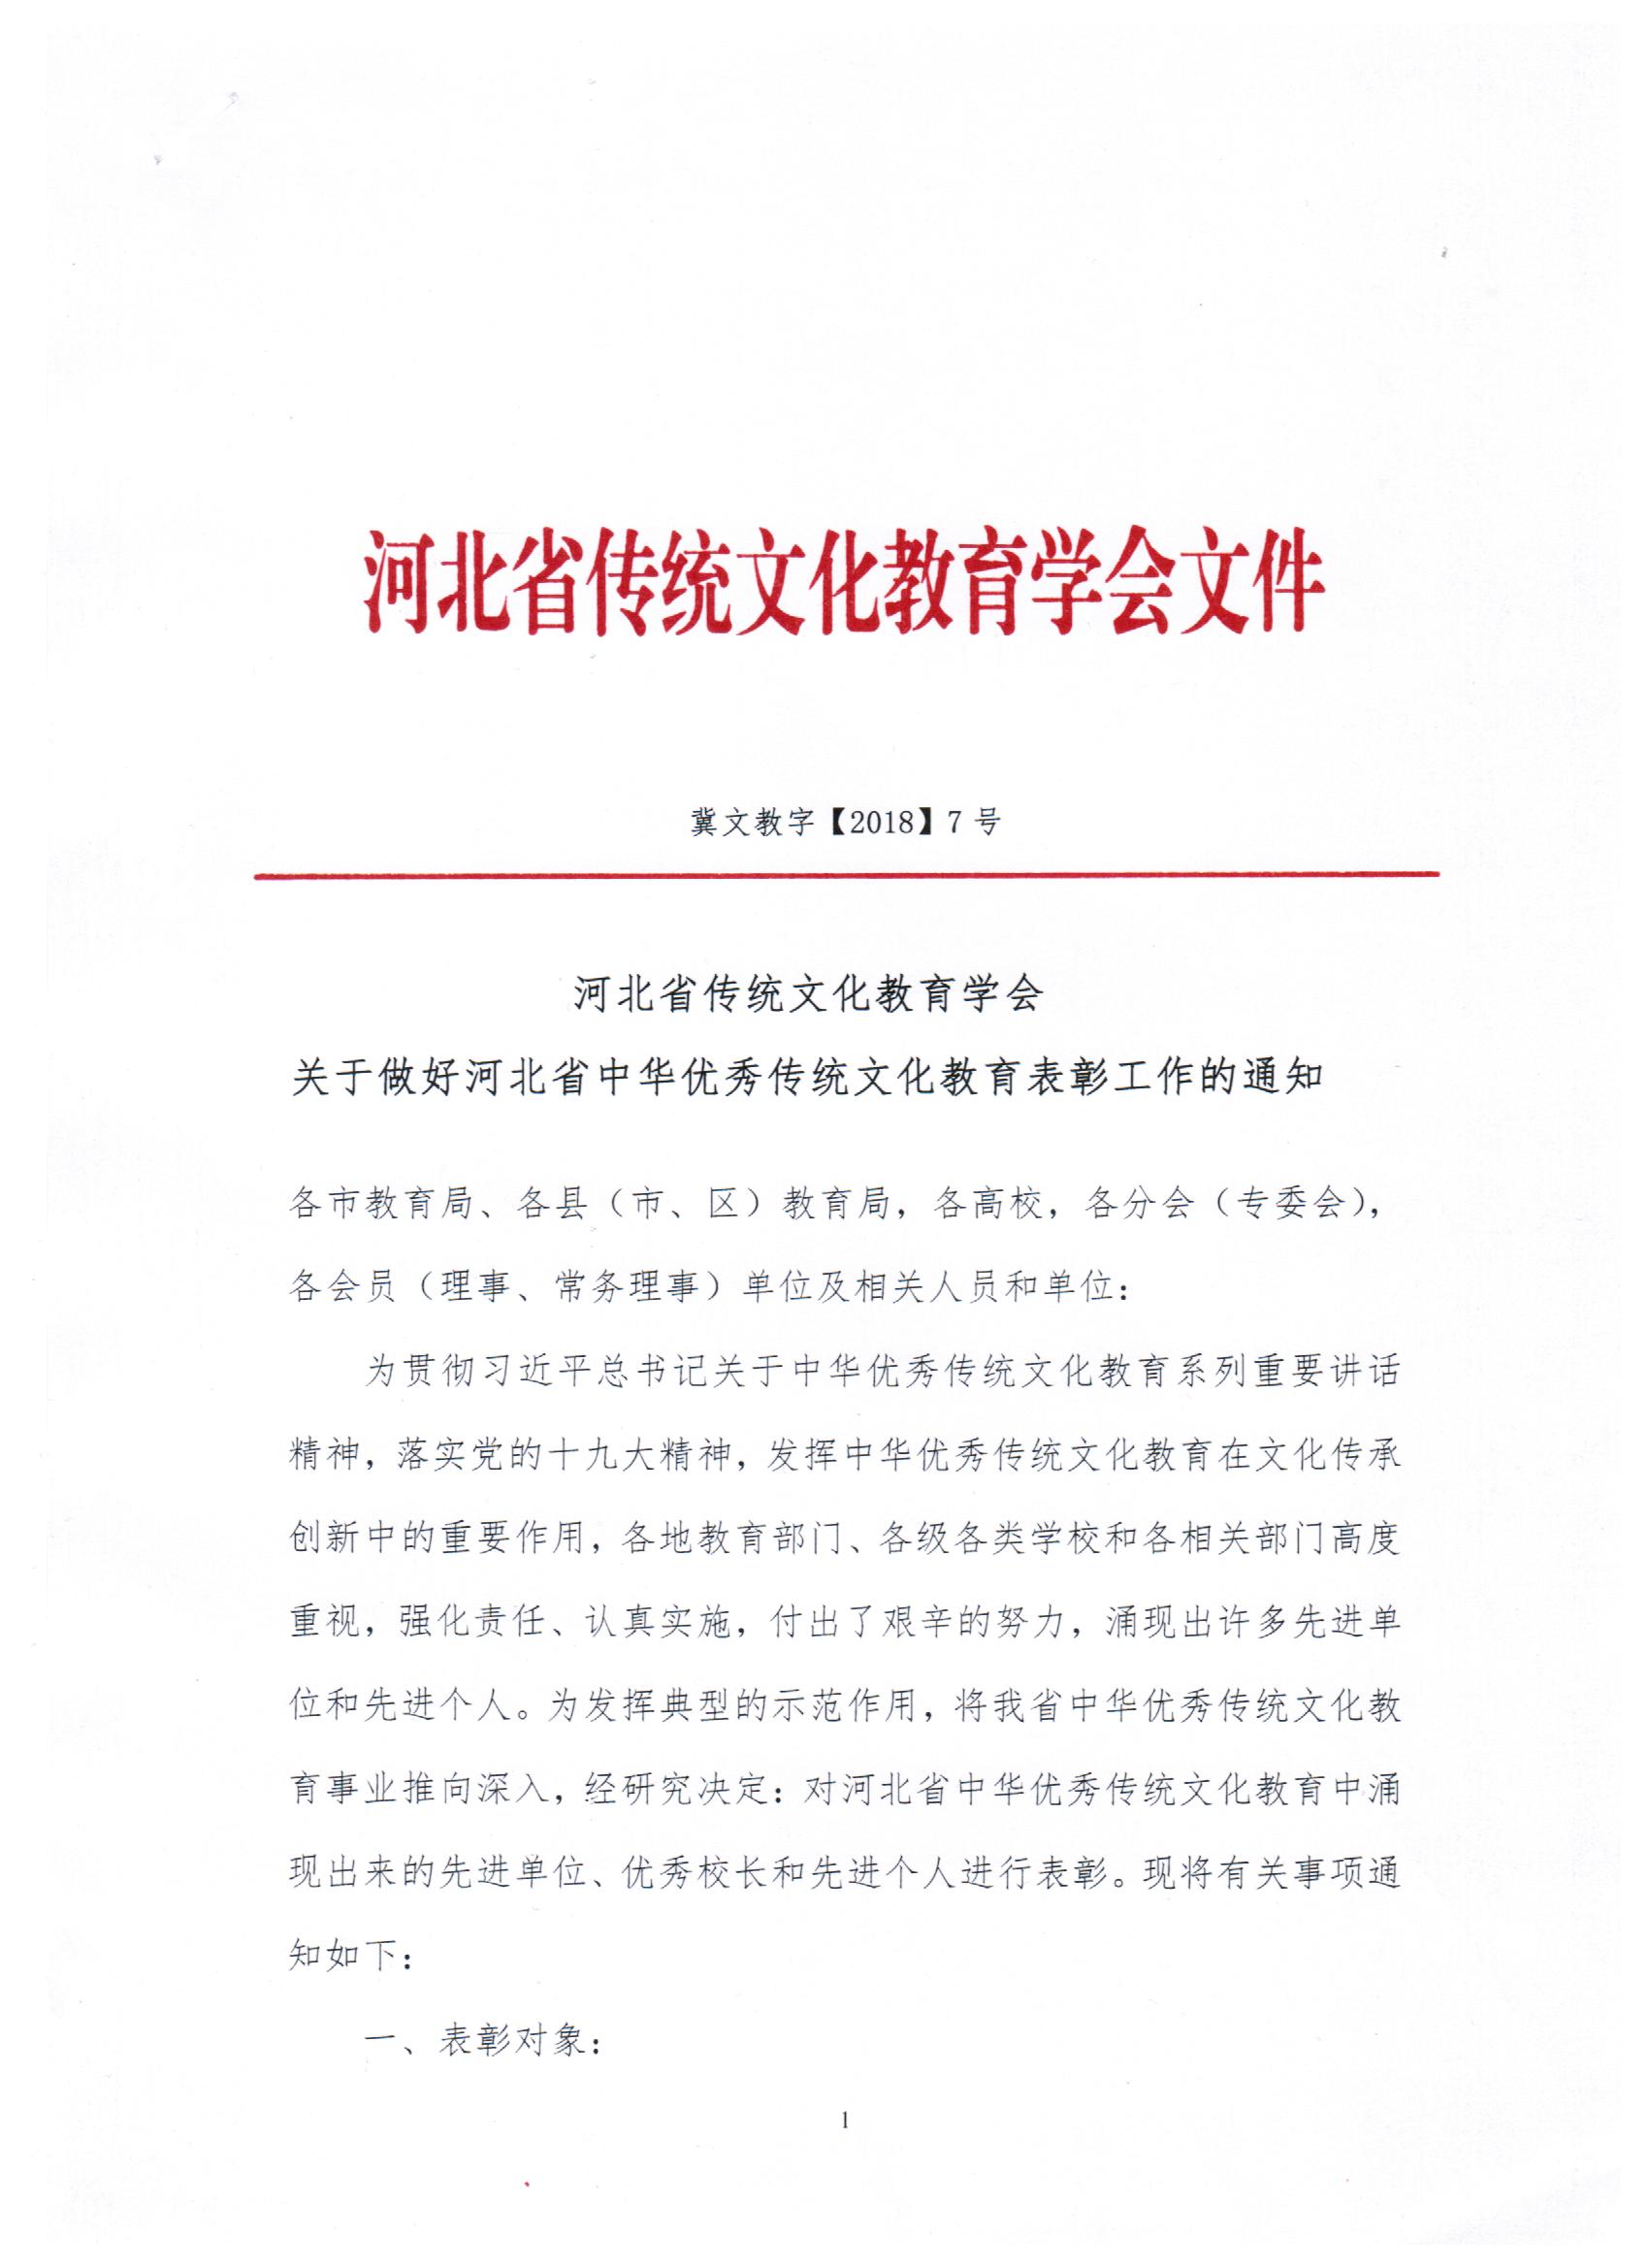 关于做好河北省中华优秀传统文化教育表彰工作的通知